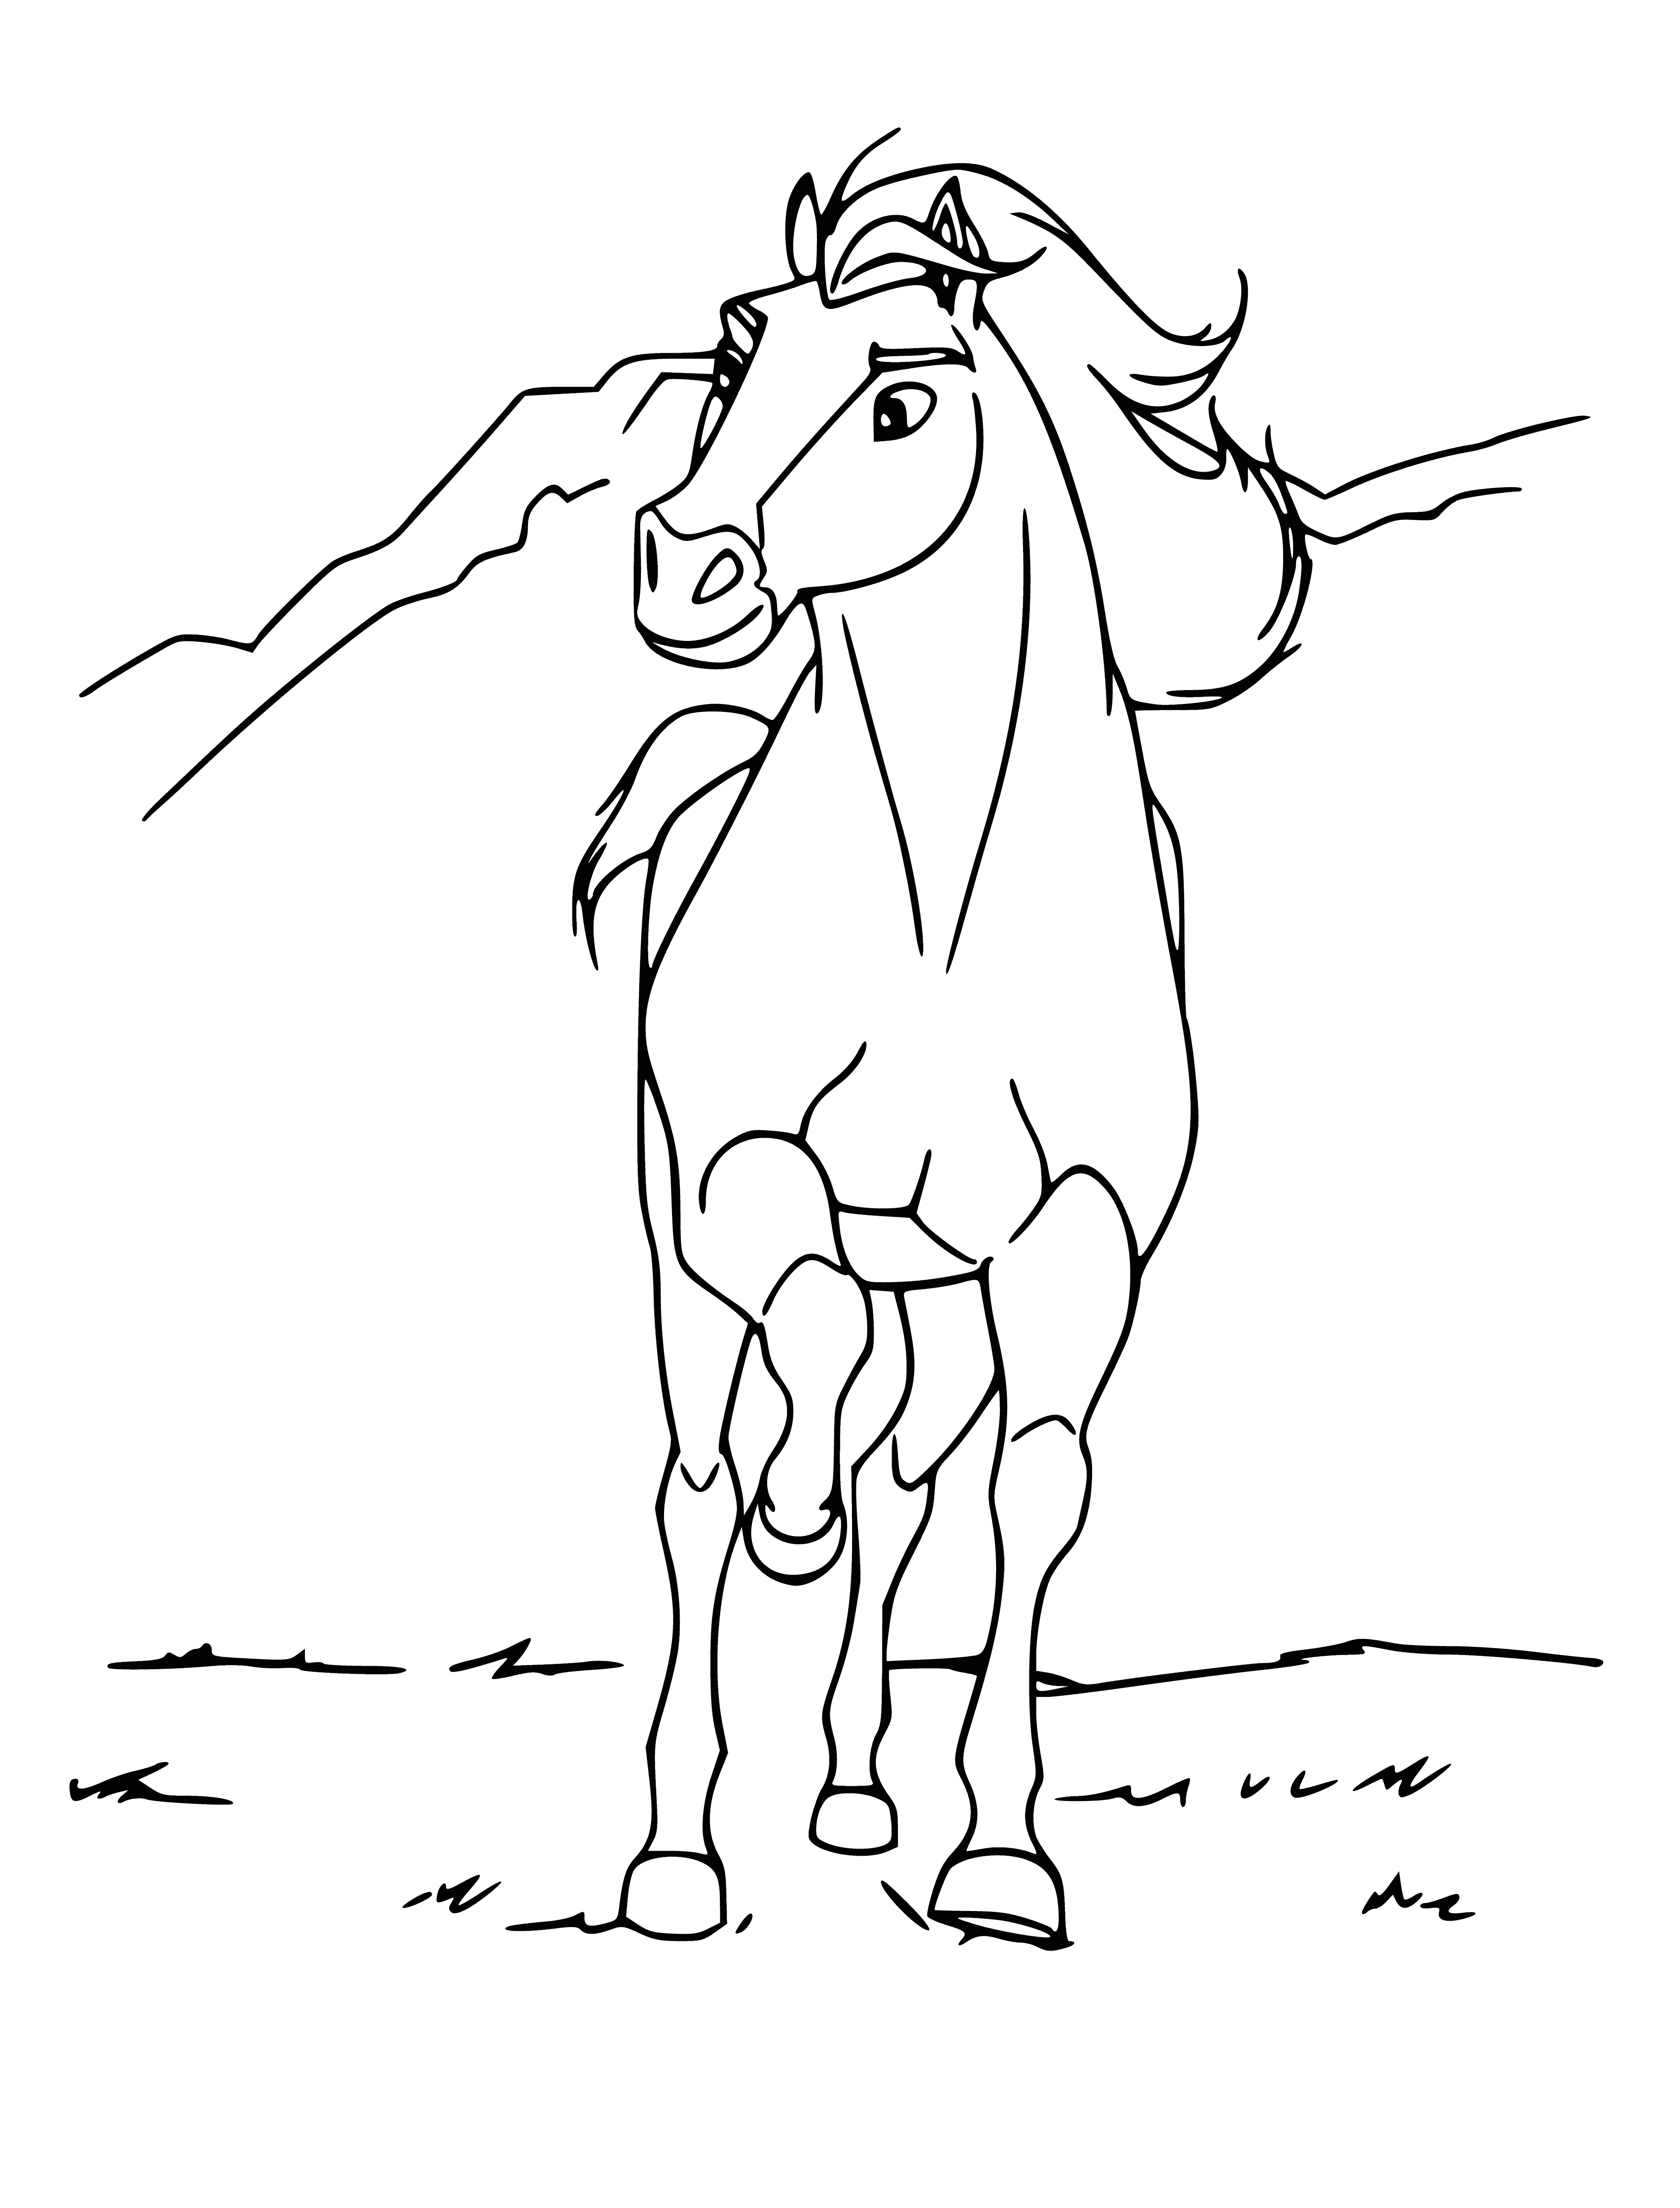 Mustang Spirit coloring page